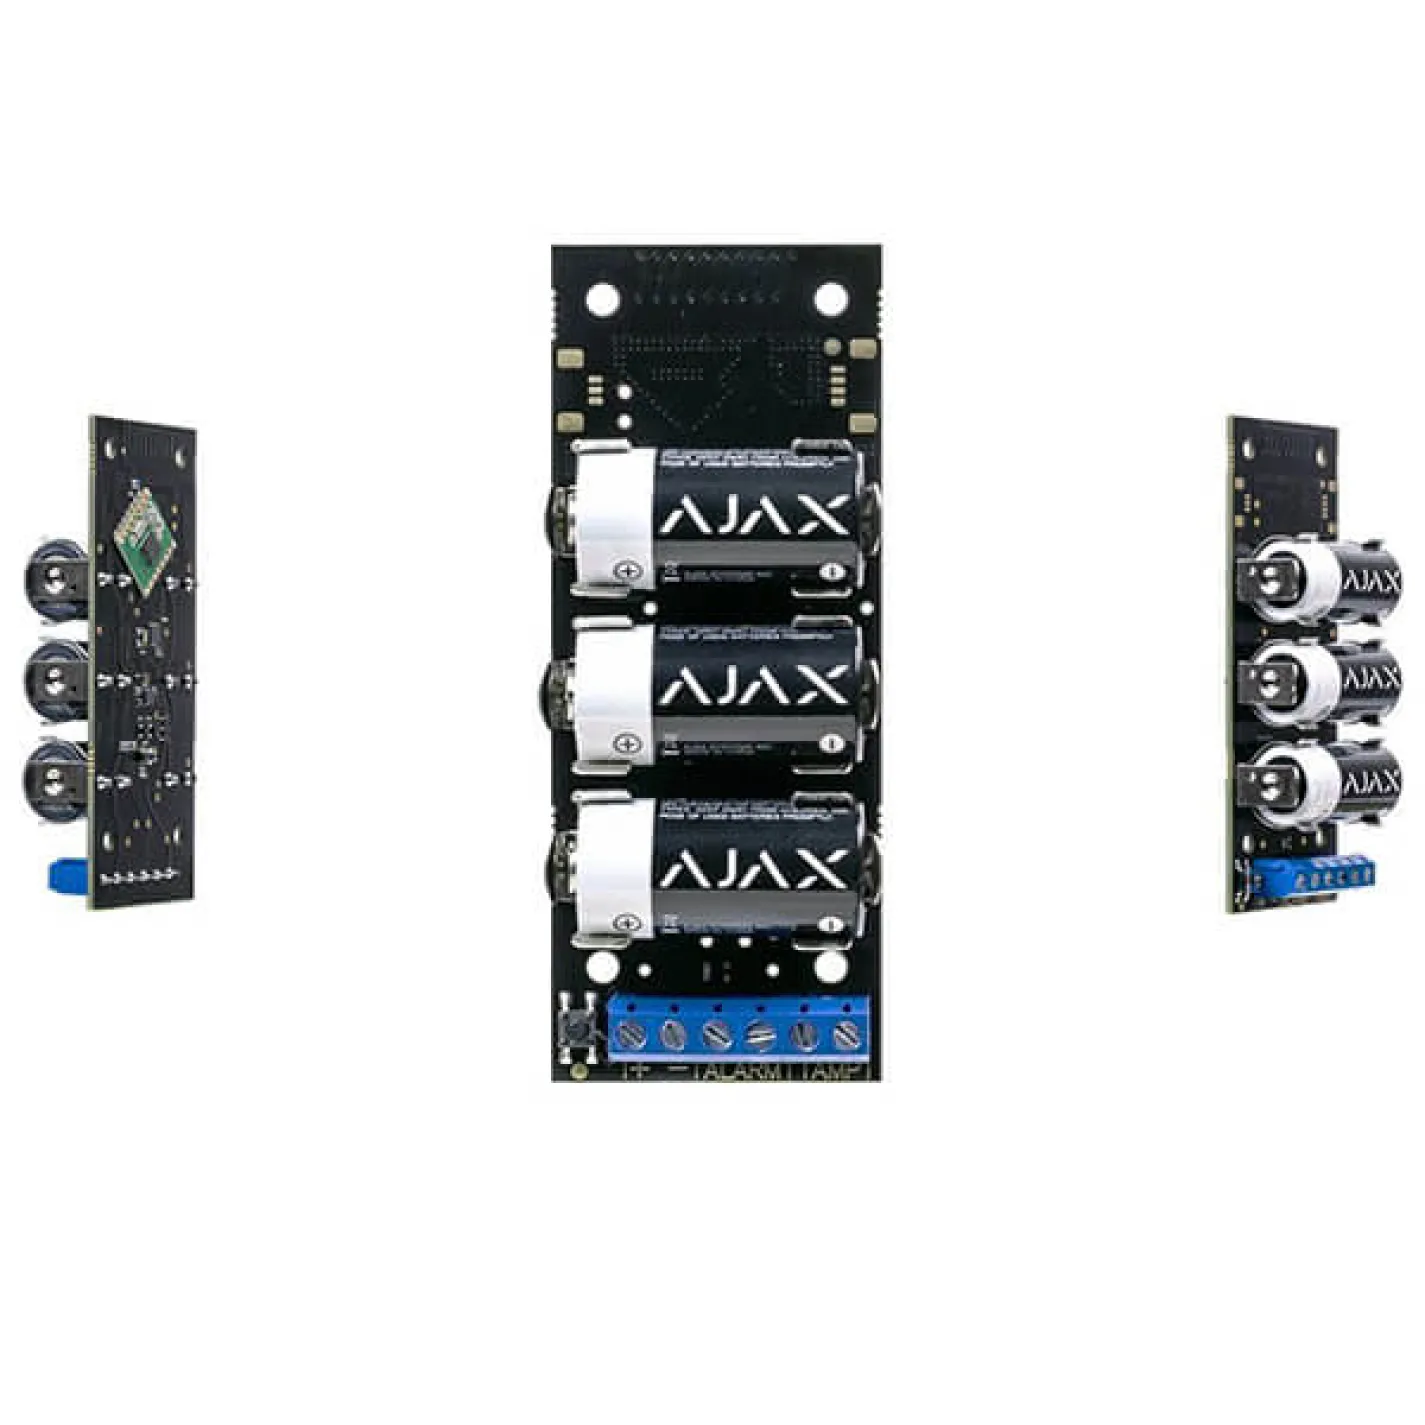 Беспроводной модуль для интеграции сторонних датчиков Ajax Transmitter, Jeweller, 3V CR123A - Фото 2